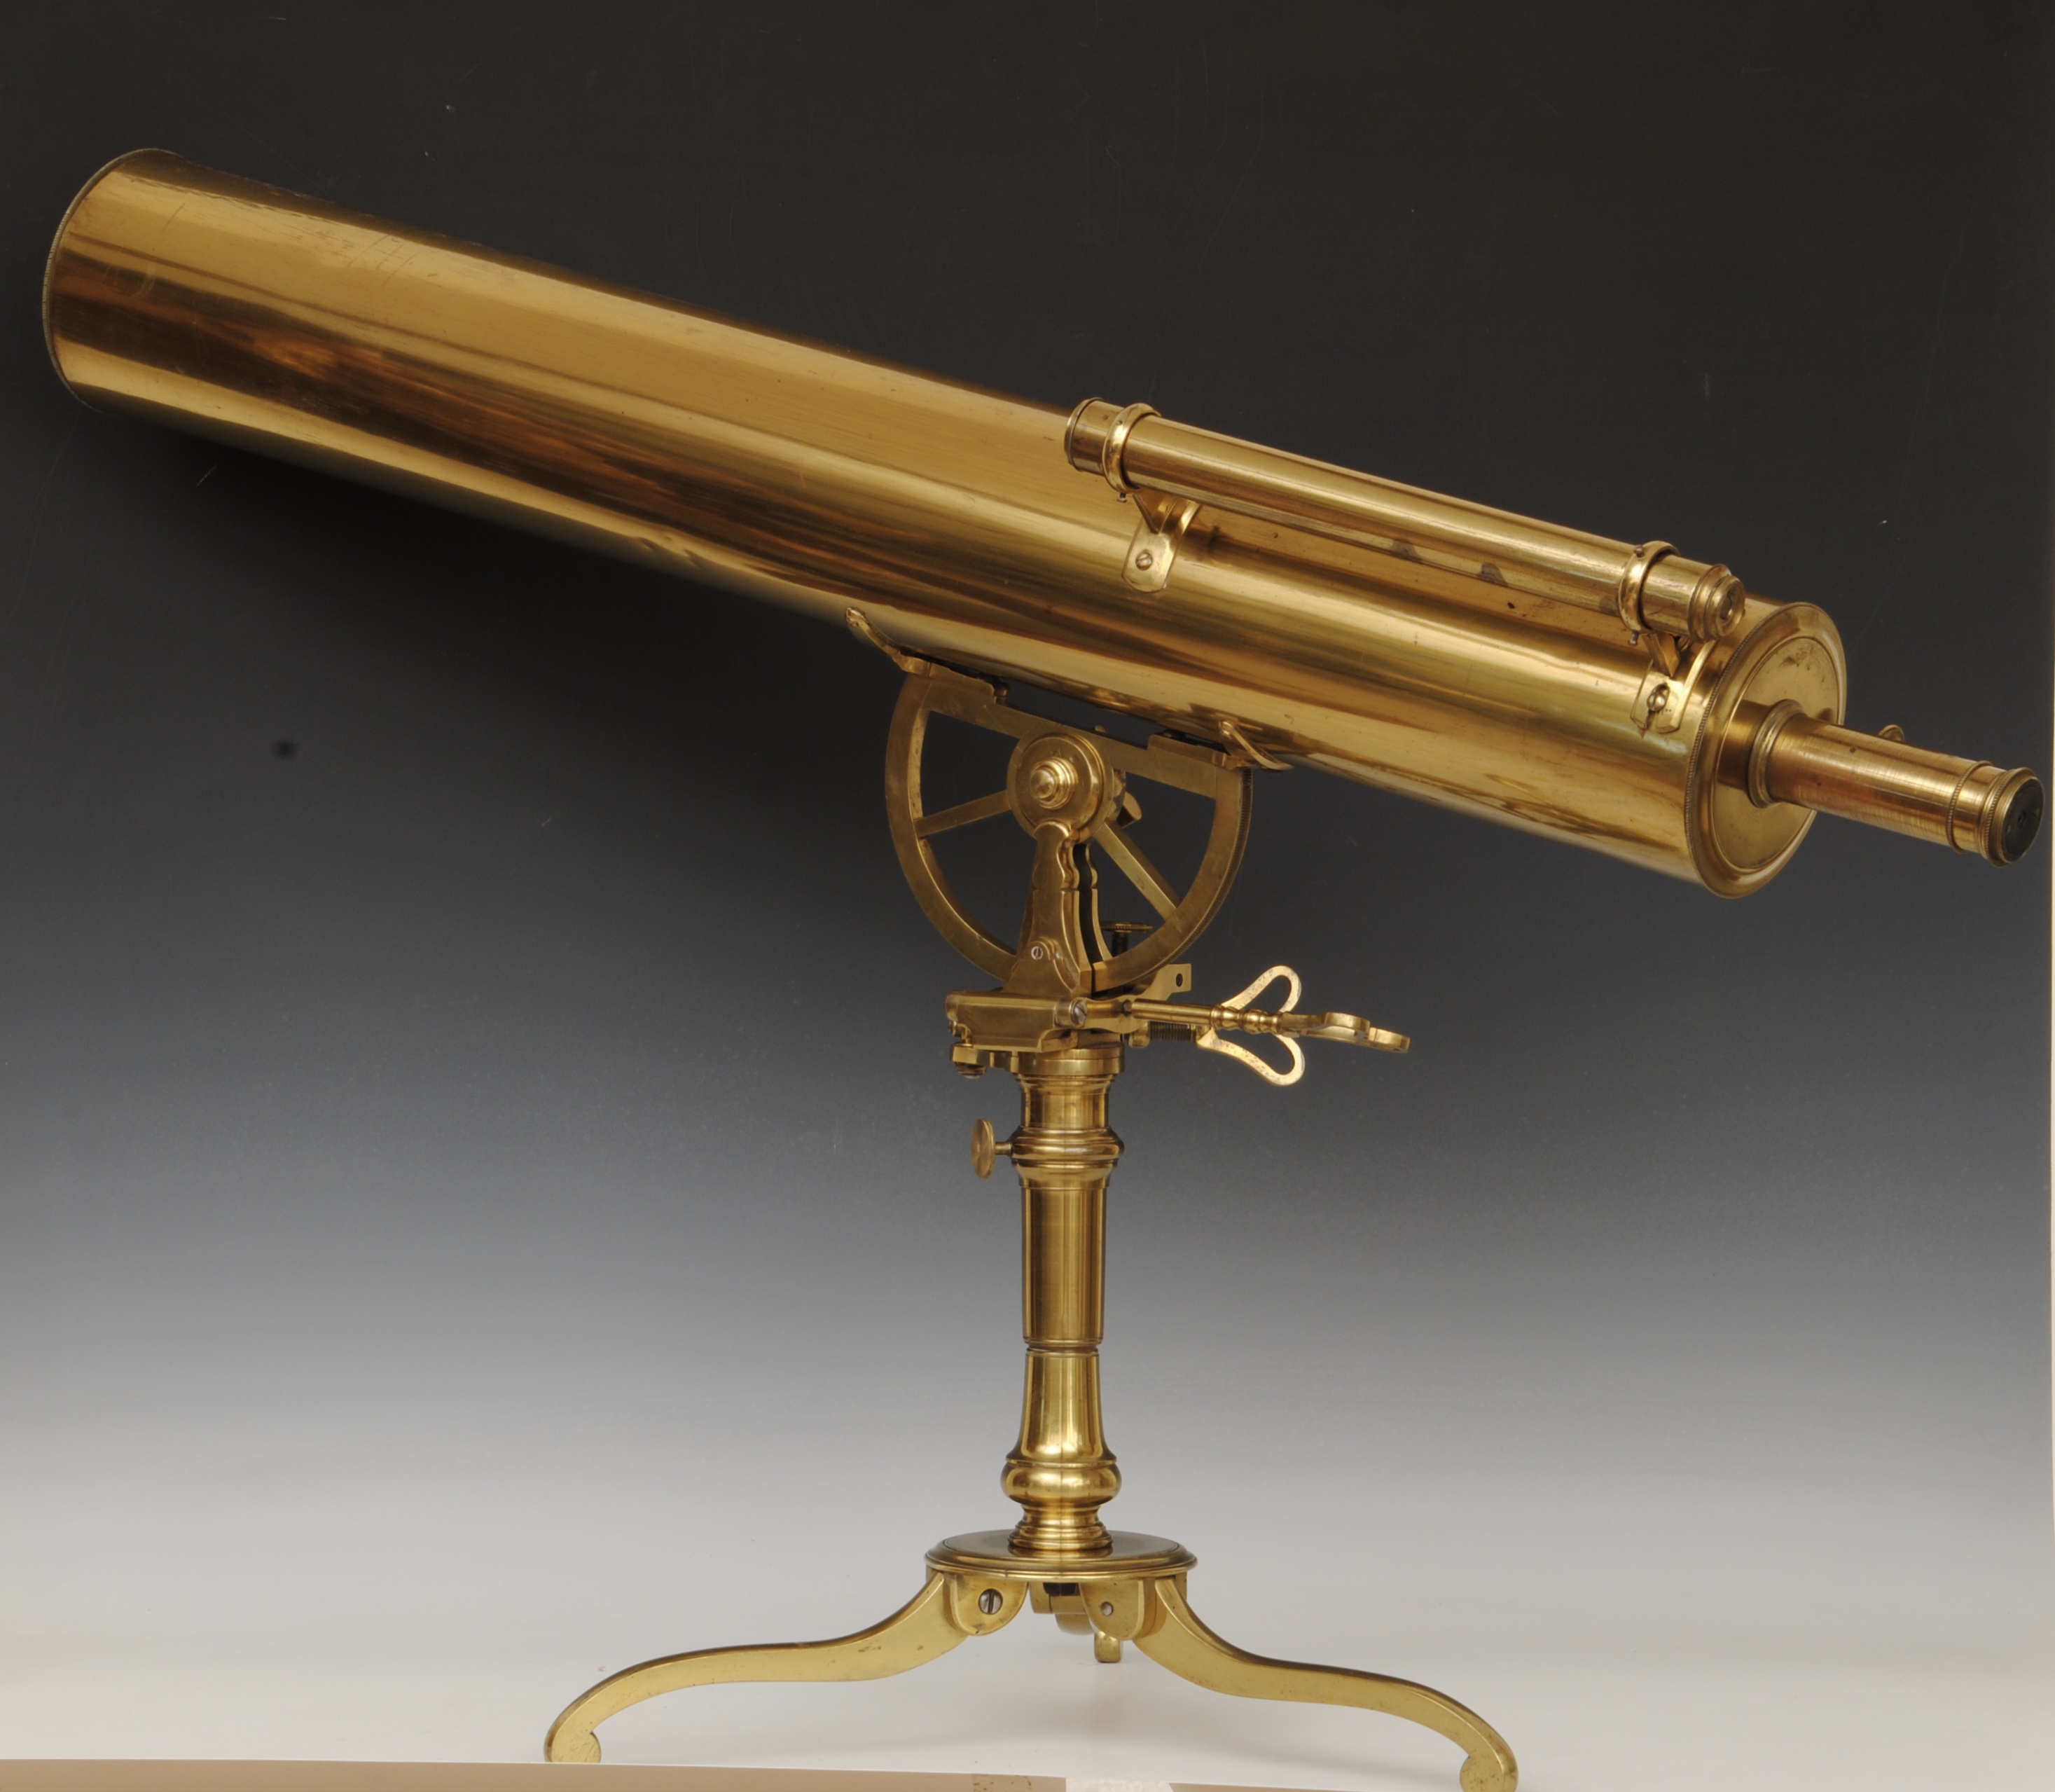 Important historical 5″ gregorian telescope belonging to Hon. Constantine Phipps